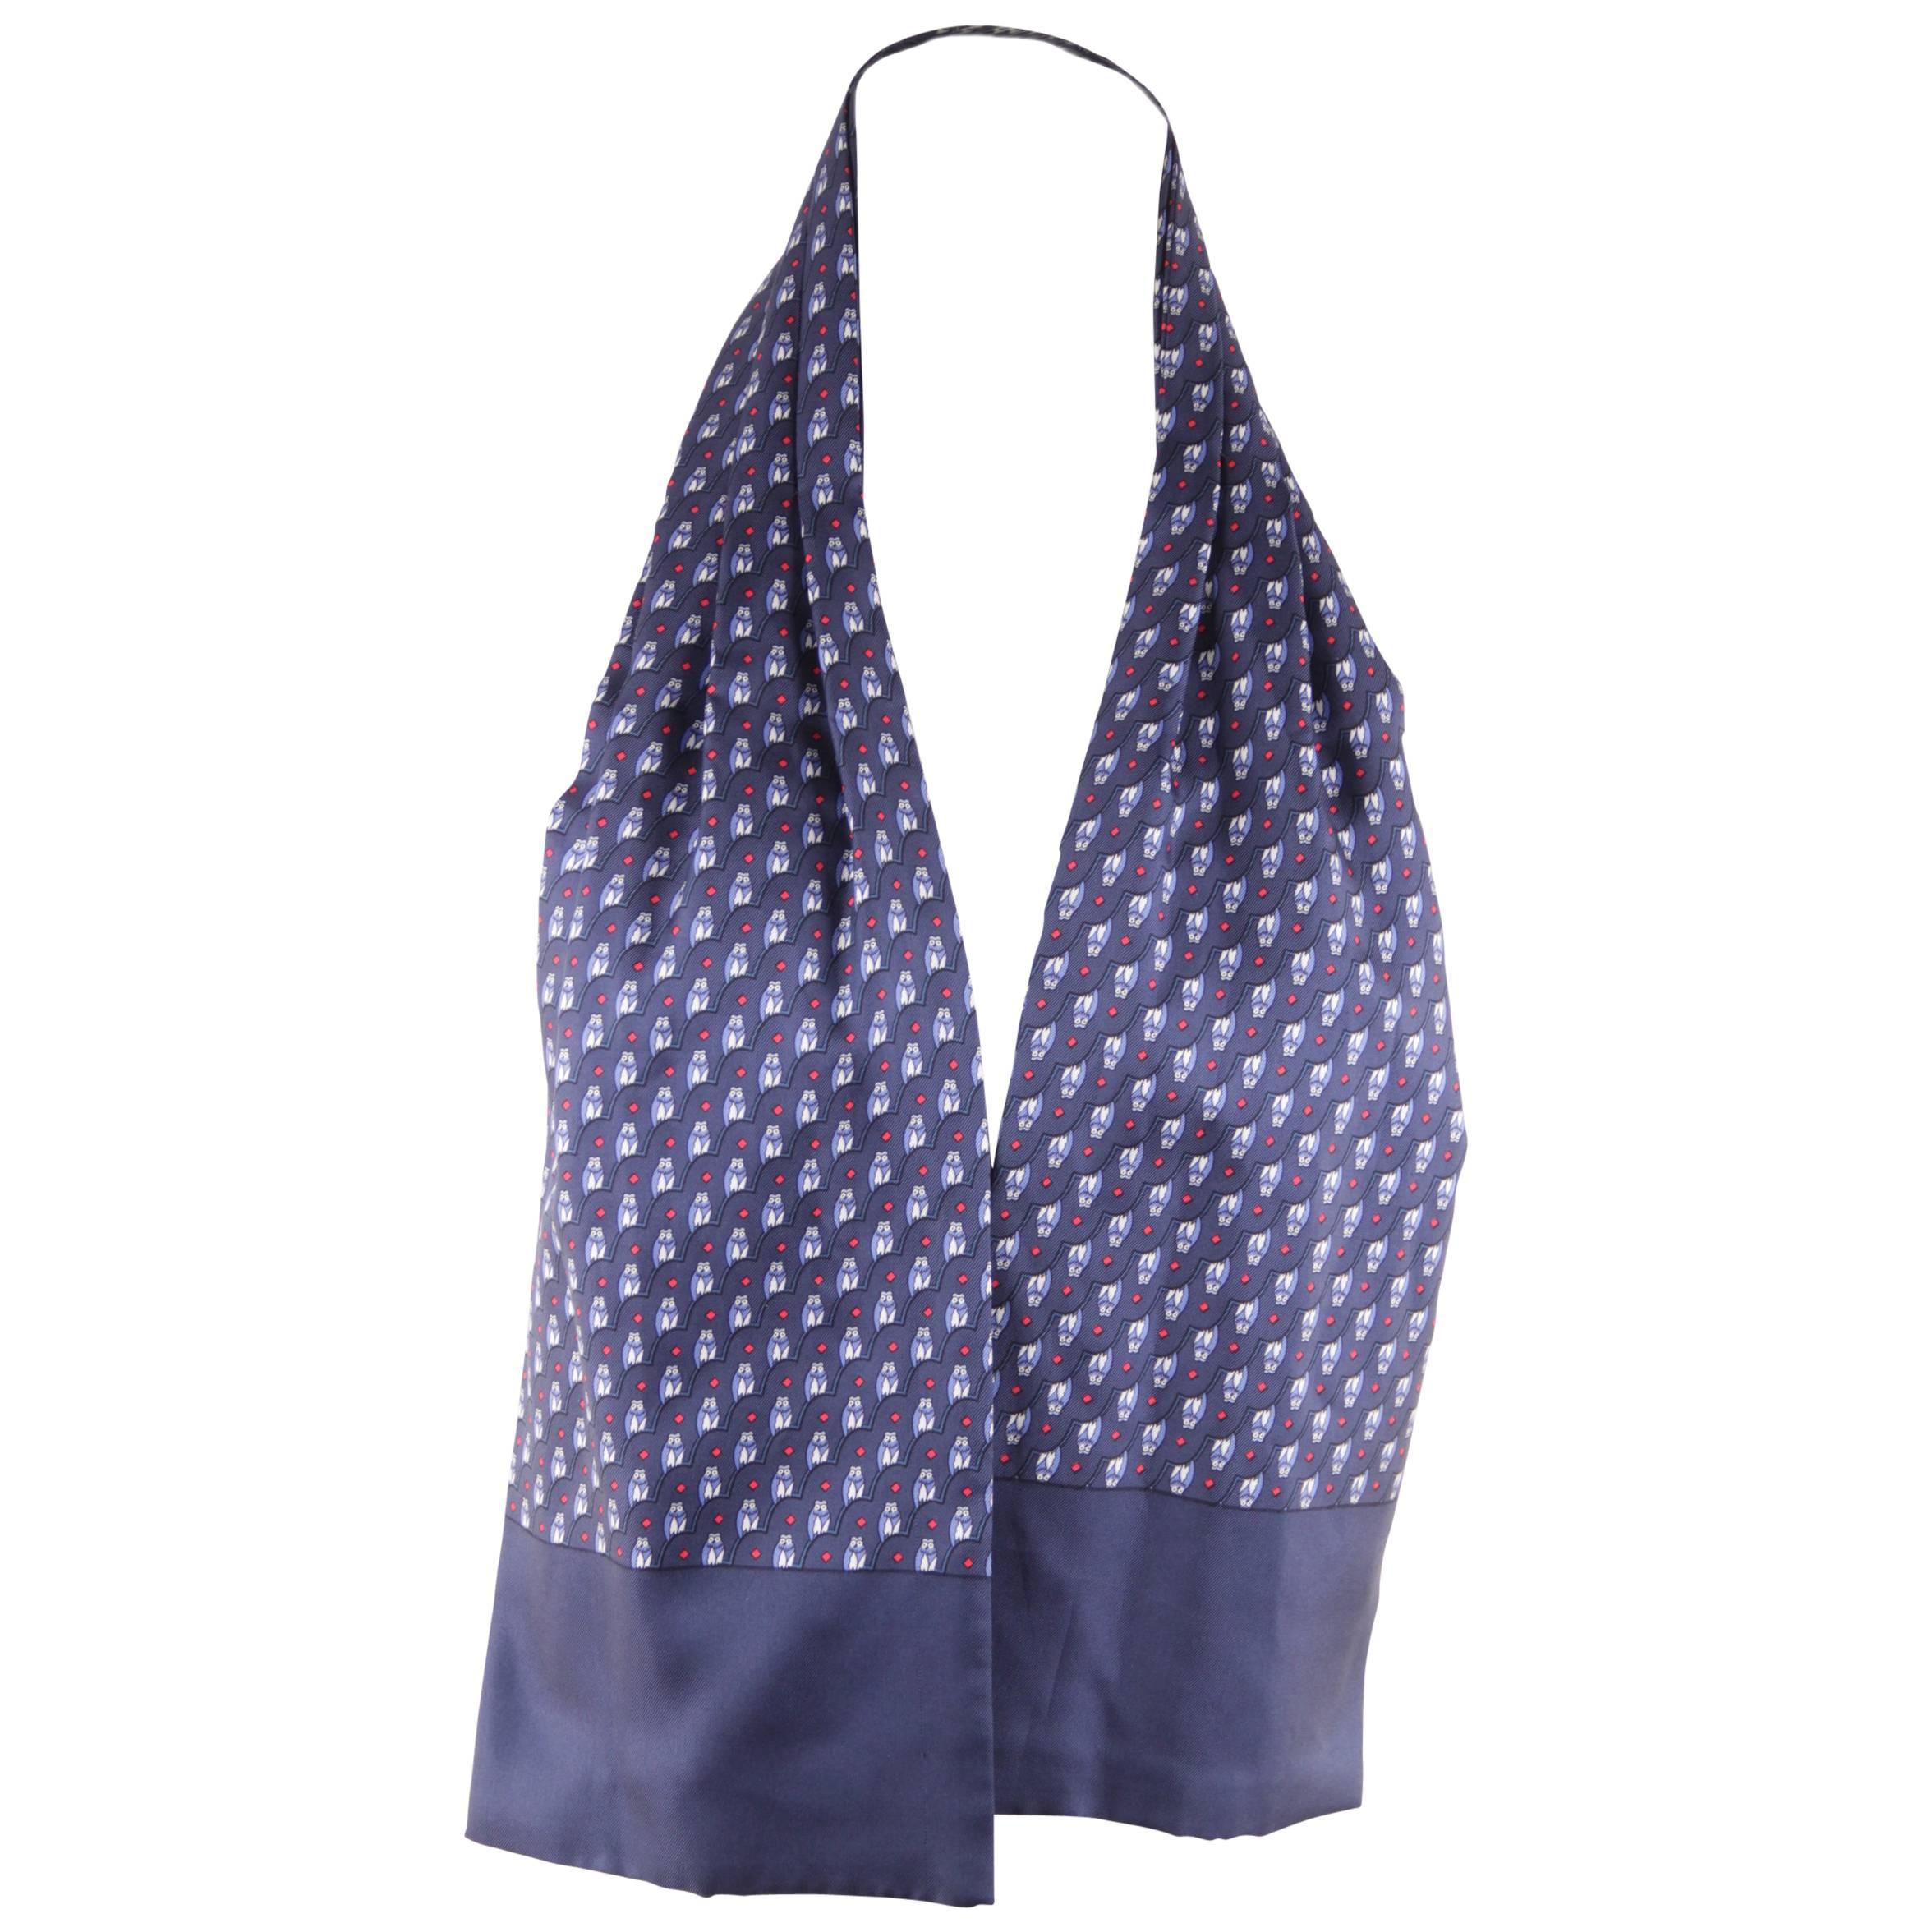 HERMES PARIS Vintage Blue Silk ASCOT SCARF Cravat Tie OWL Design w/ BOX